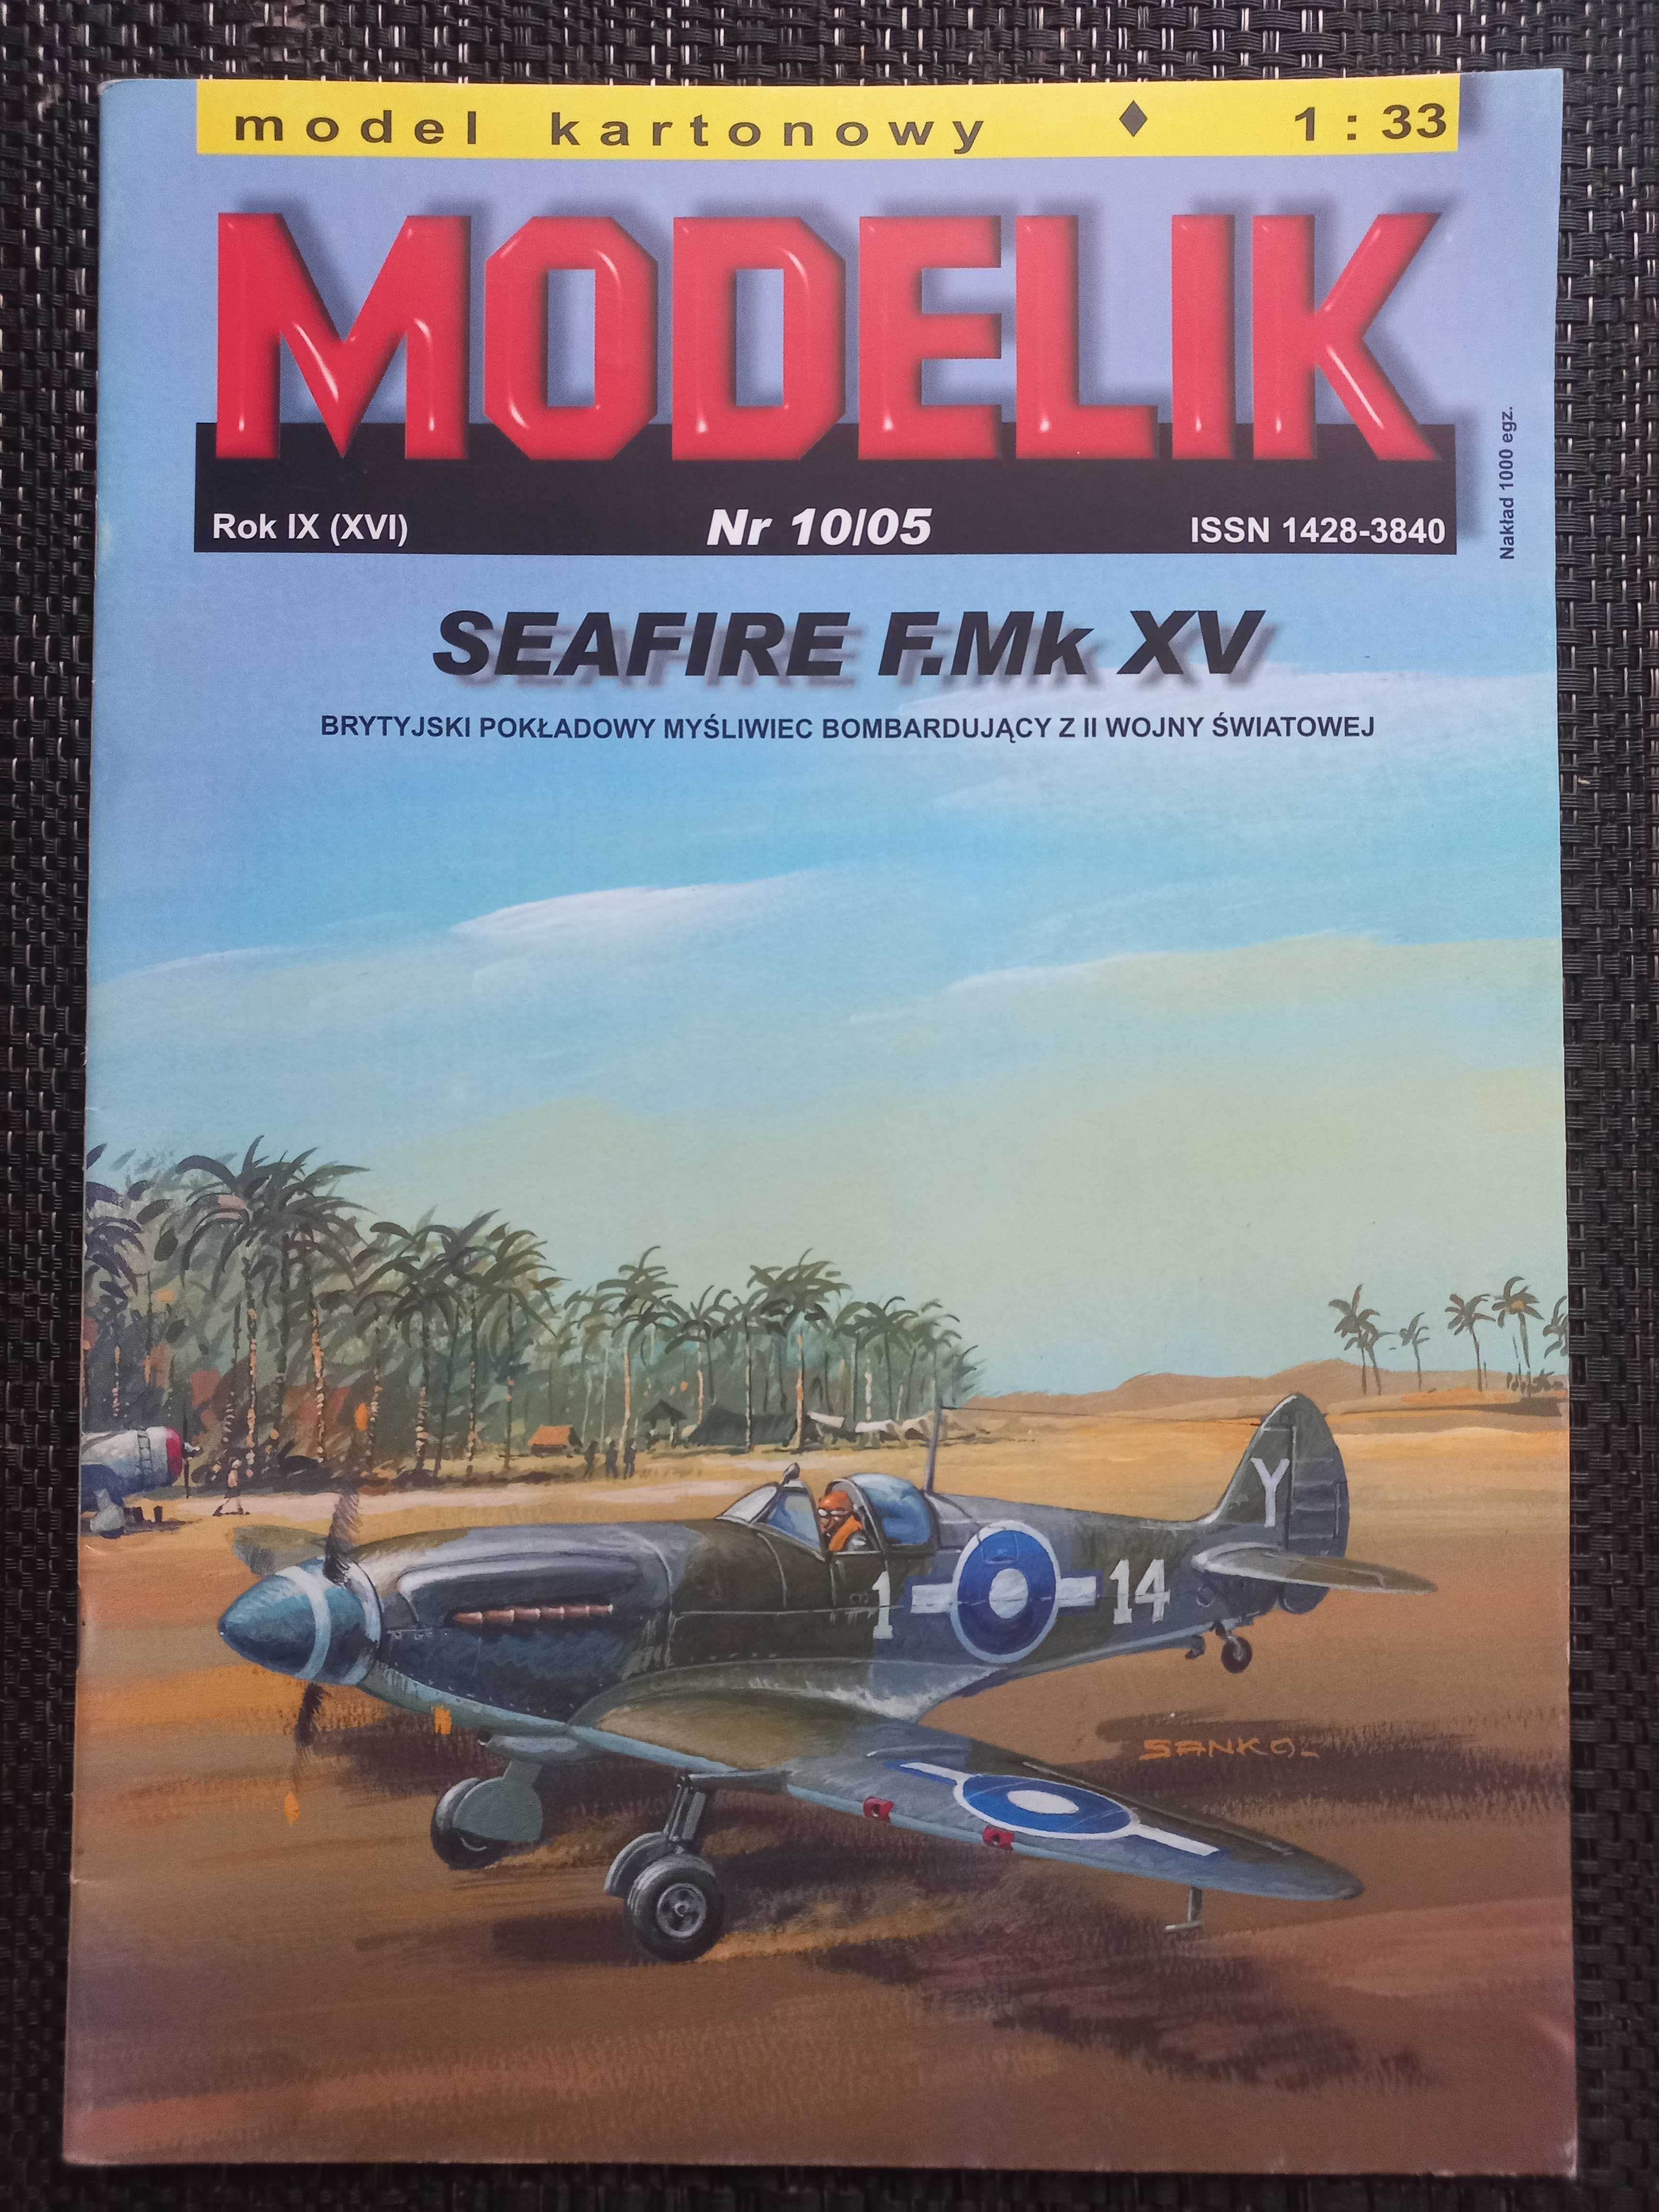 Model Kartonowy Modelik 10/2005 Seafire F.Mk XV